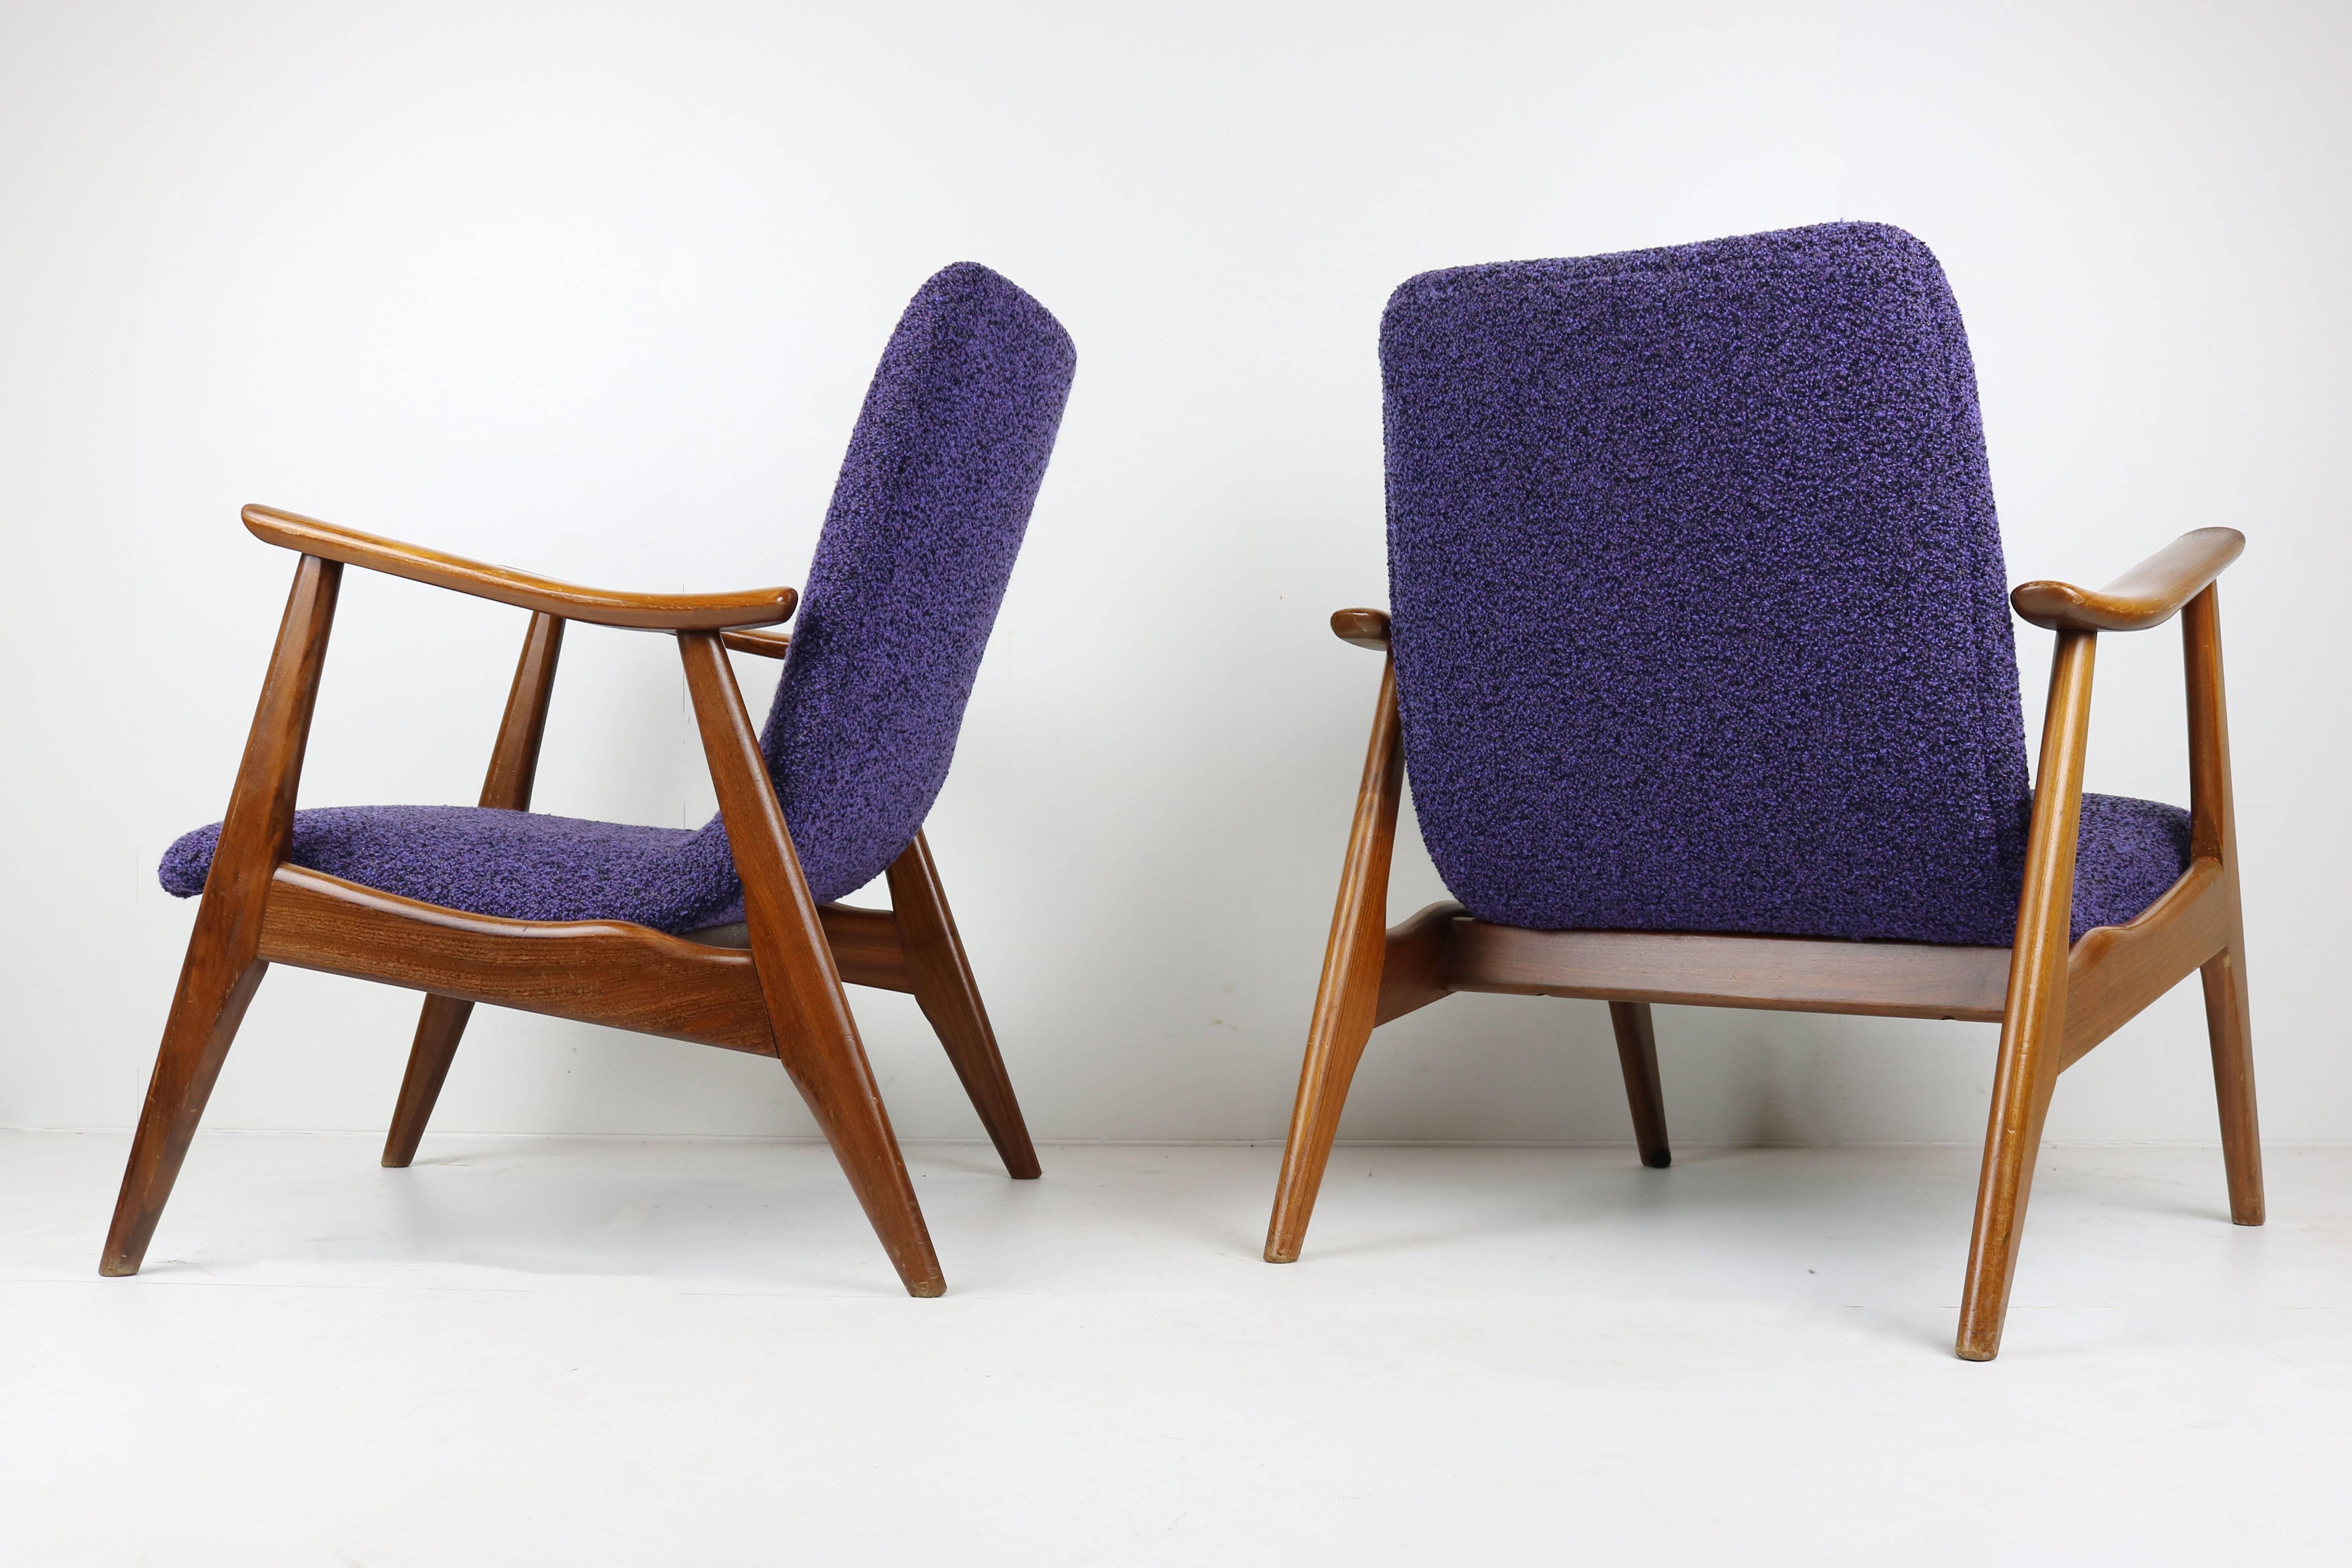 Set of Two Teak Lounge Chairs by Louis Van Teeffelen for Webe 1960 Brown Purple 2